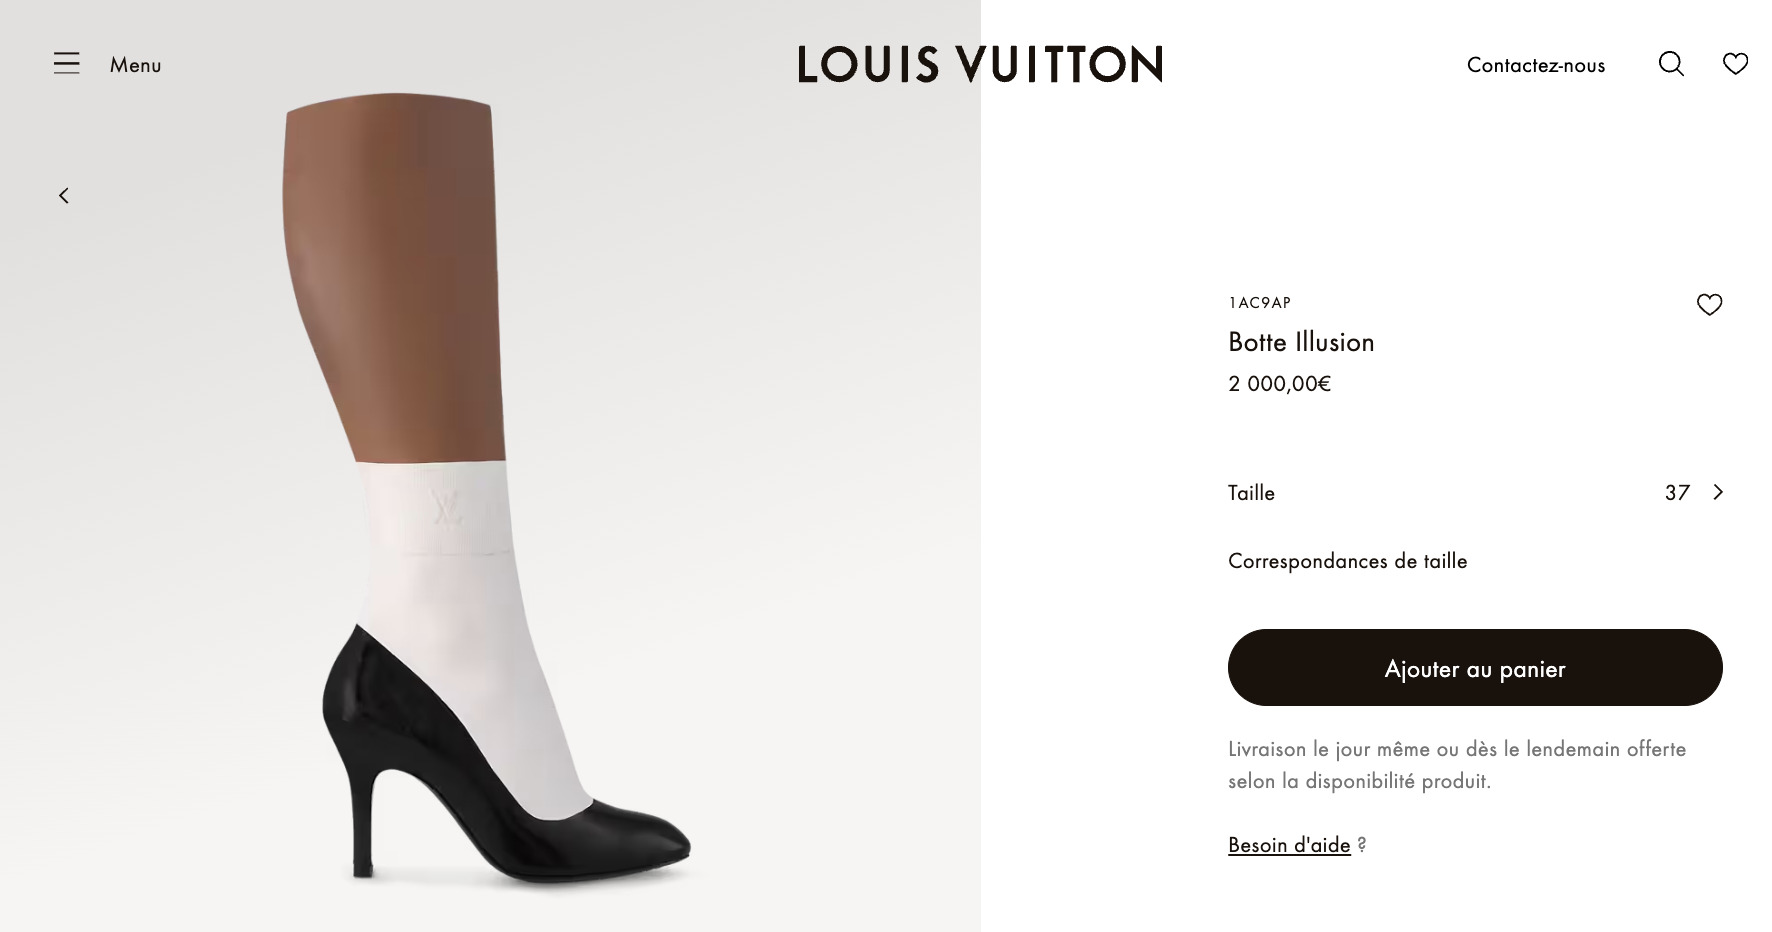 La paire de botte Illusion de Louis Vuitton coûte la bagattelle de 2000 €